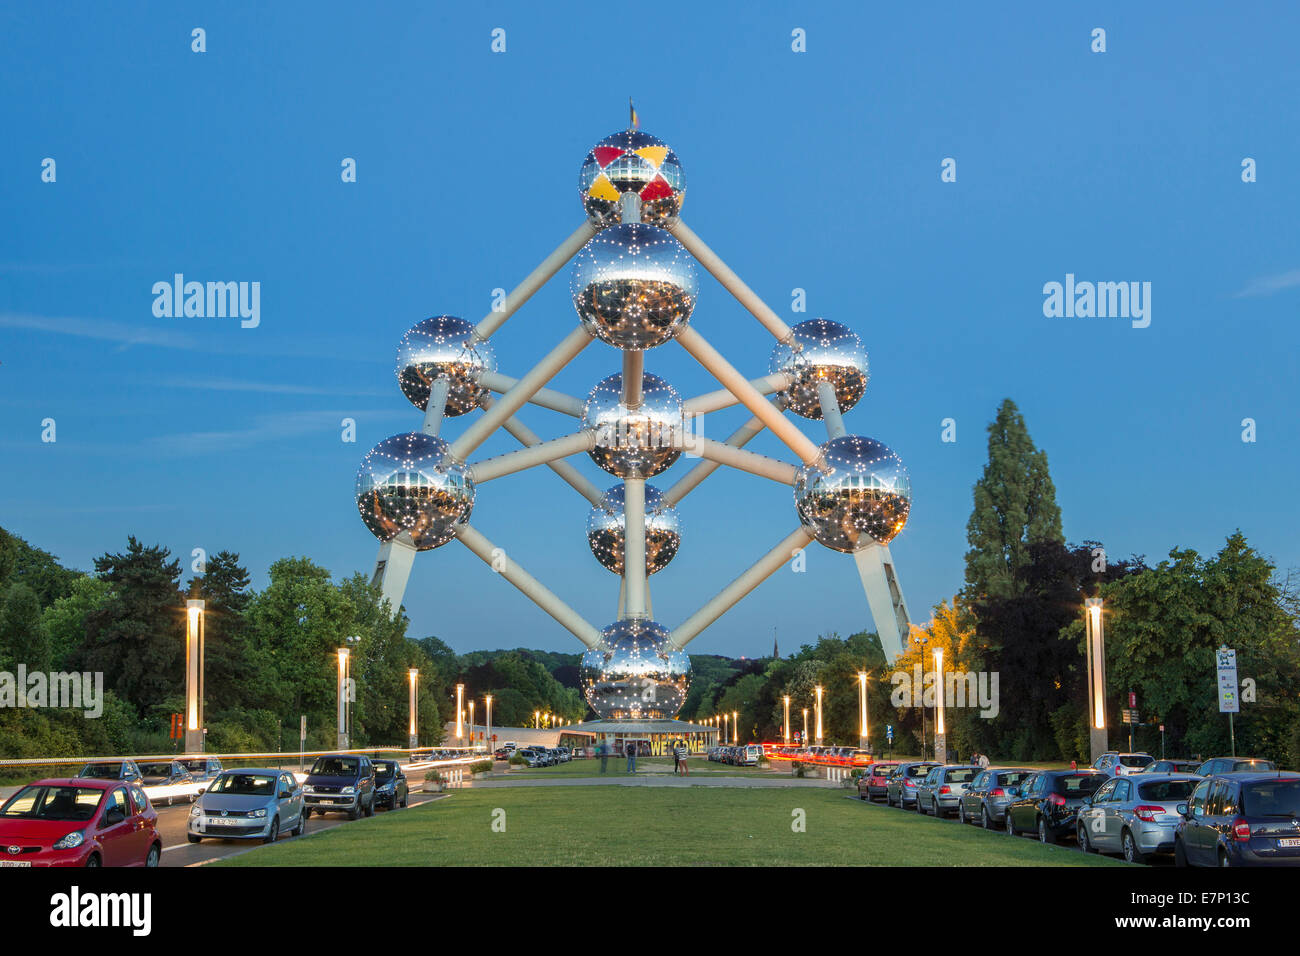 Atomium, sphères, Belgique, Europe, Bruxelles, architecture, ballons, ville, expo, célèbre, printemps, soir, touristique, voyage Banque D'Images